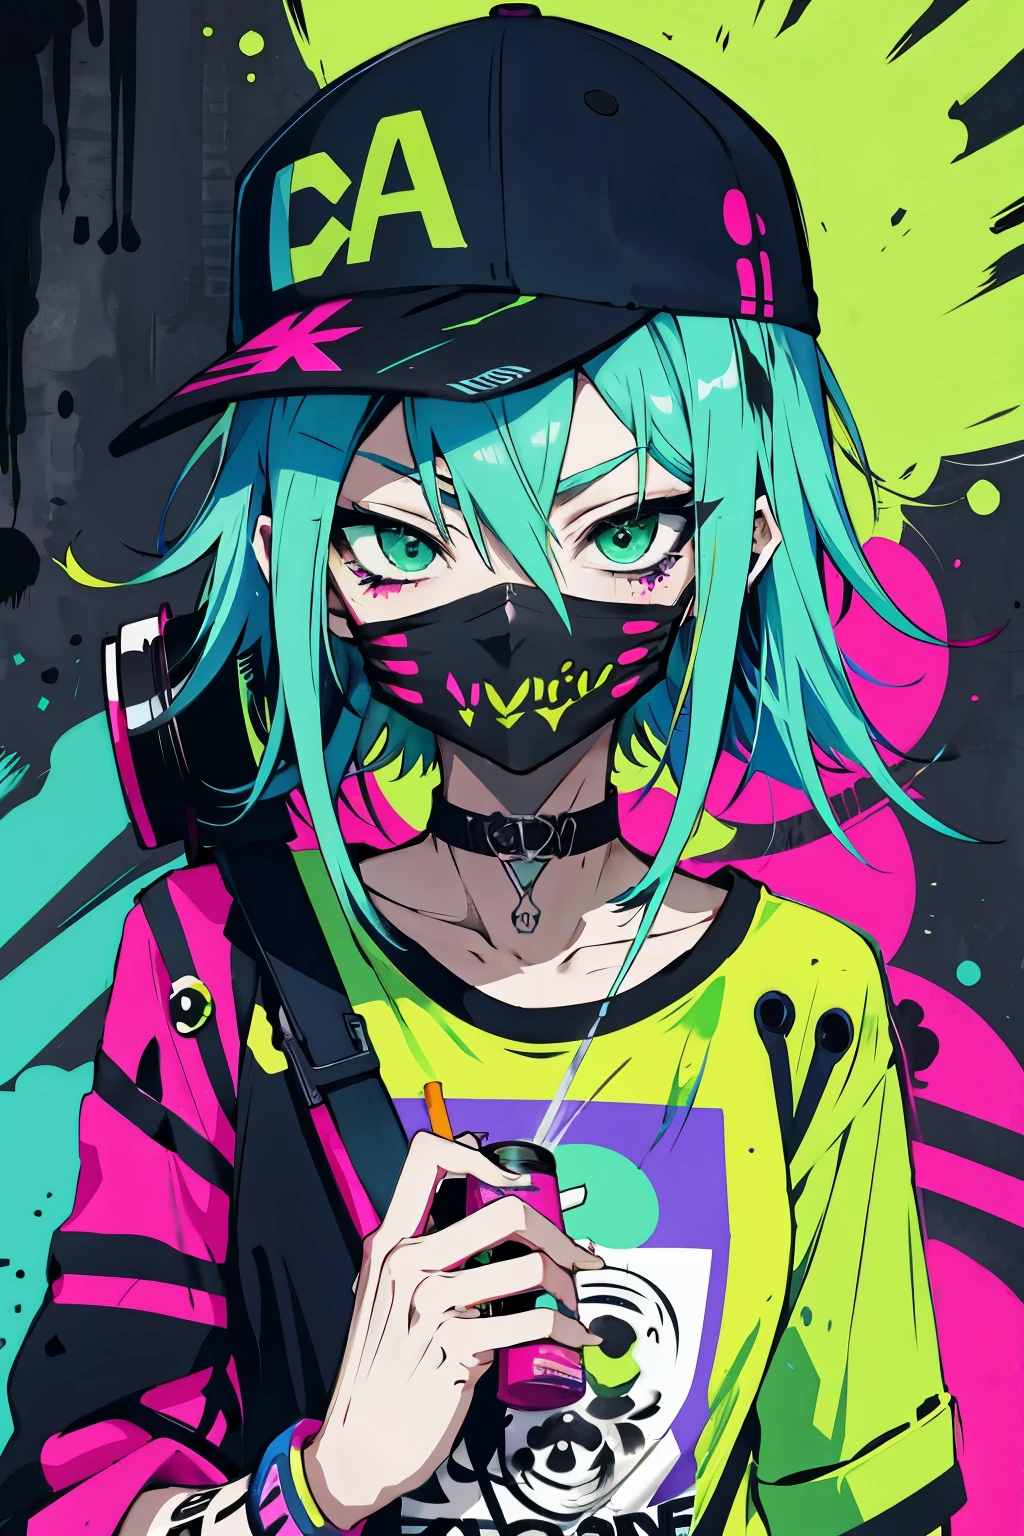 Anime schlankes Mädchen mit einer Mütze und einer Maske, schmales Gesicht, Eine Sprühdose halten, grünes, unordentliches Haar, Straßenhintergrund in Neonpink und Blau, Aufkleber, Grinsen im Gesicht, Harley-Stimmung, Böses Mädchen